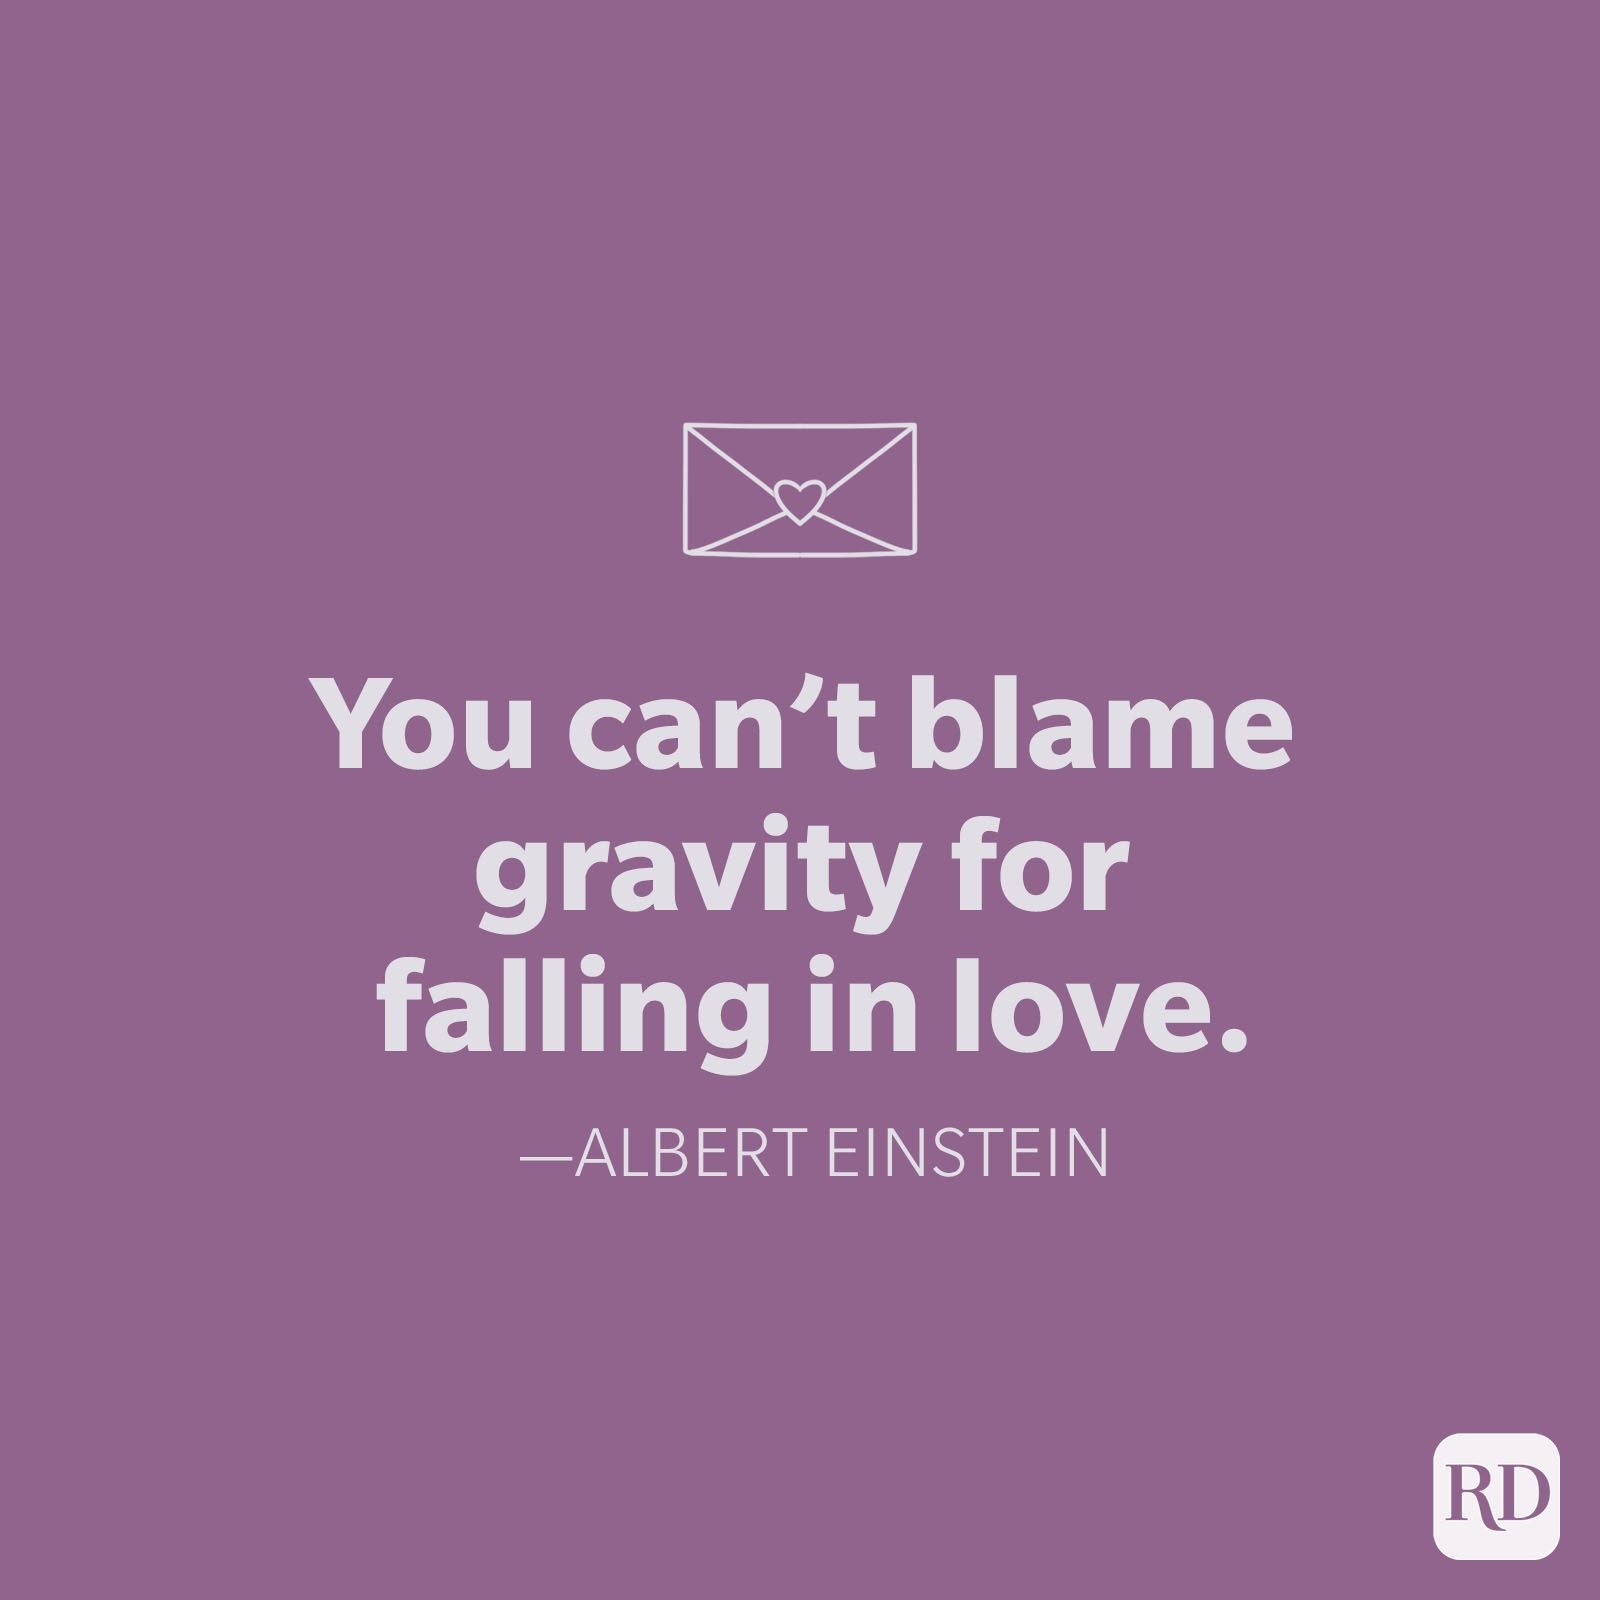 Albert Einstein Love Quote